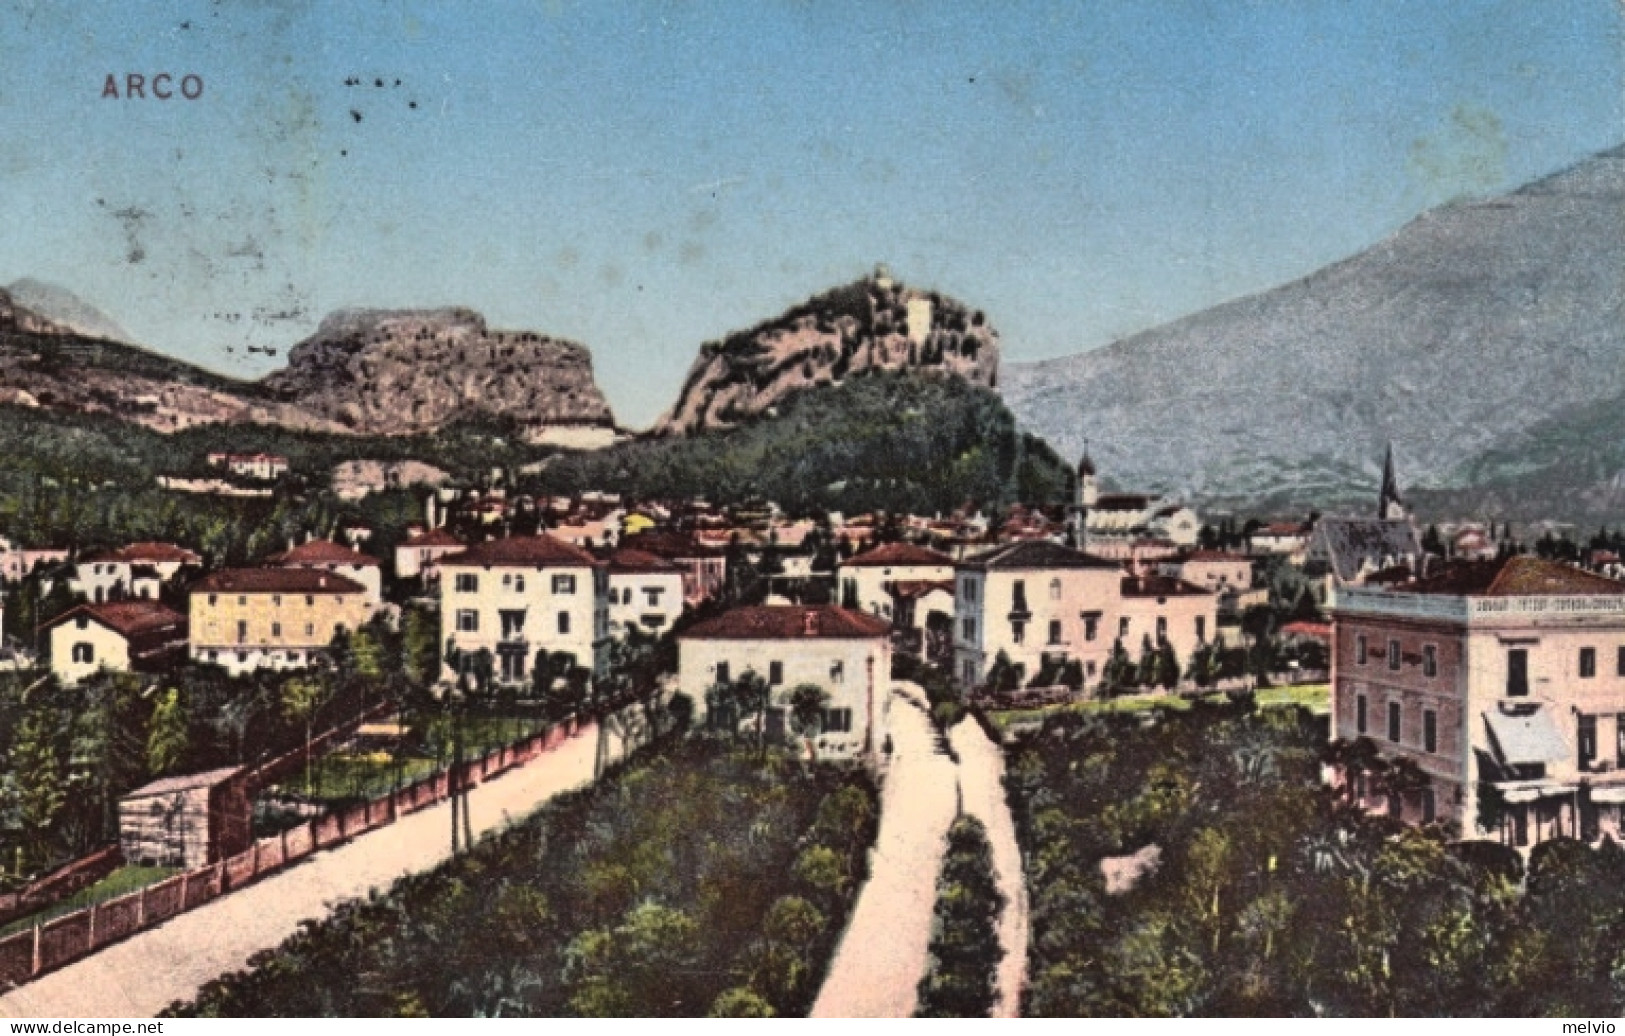 1922-Trento Arco Panorama, Con Annullo Di Foggia Austriaca - Trento